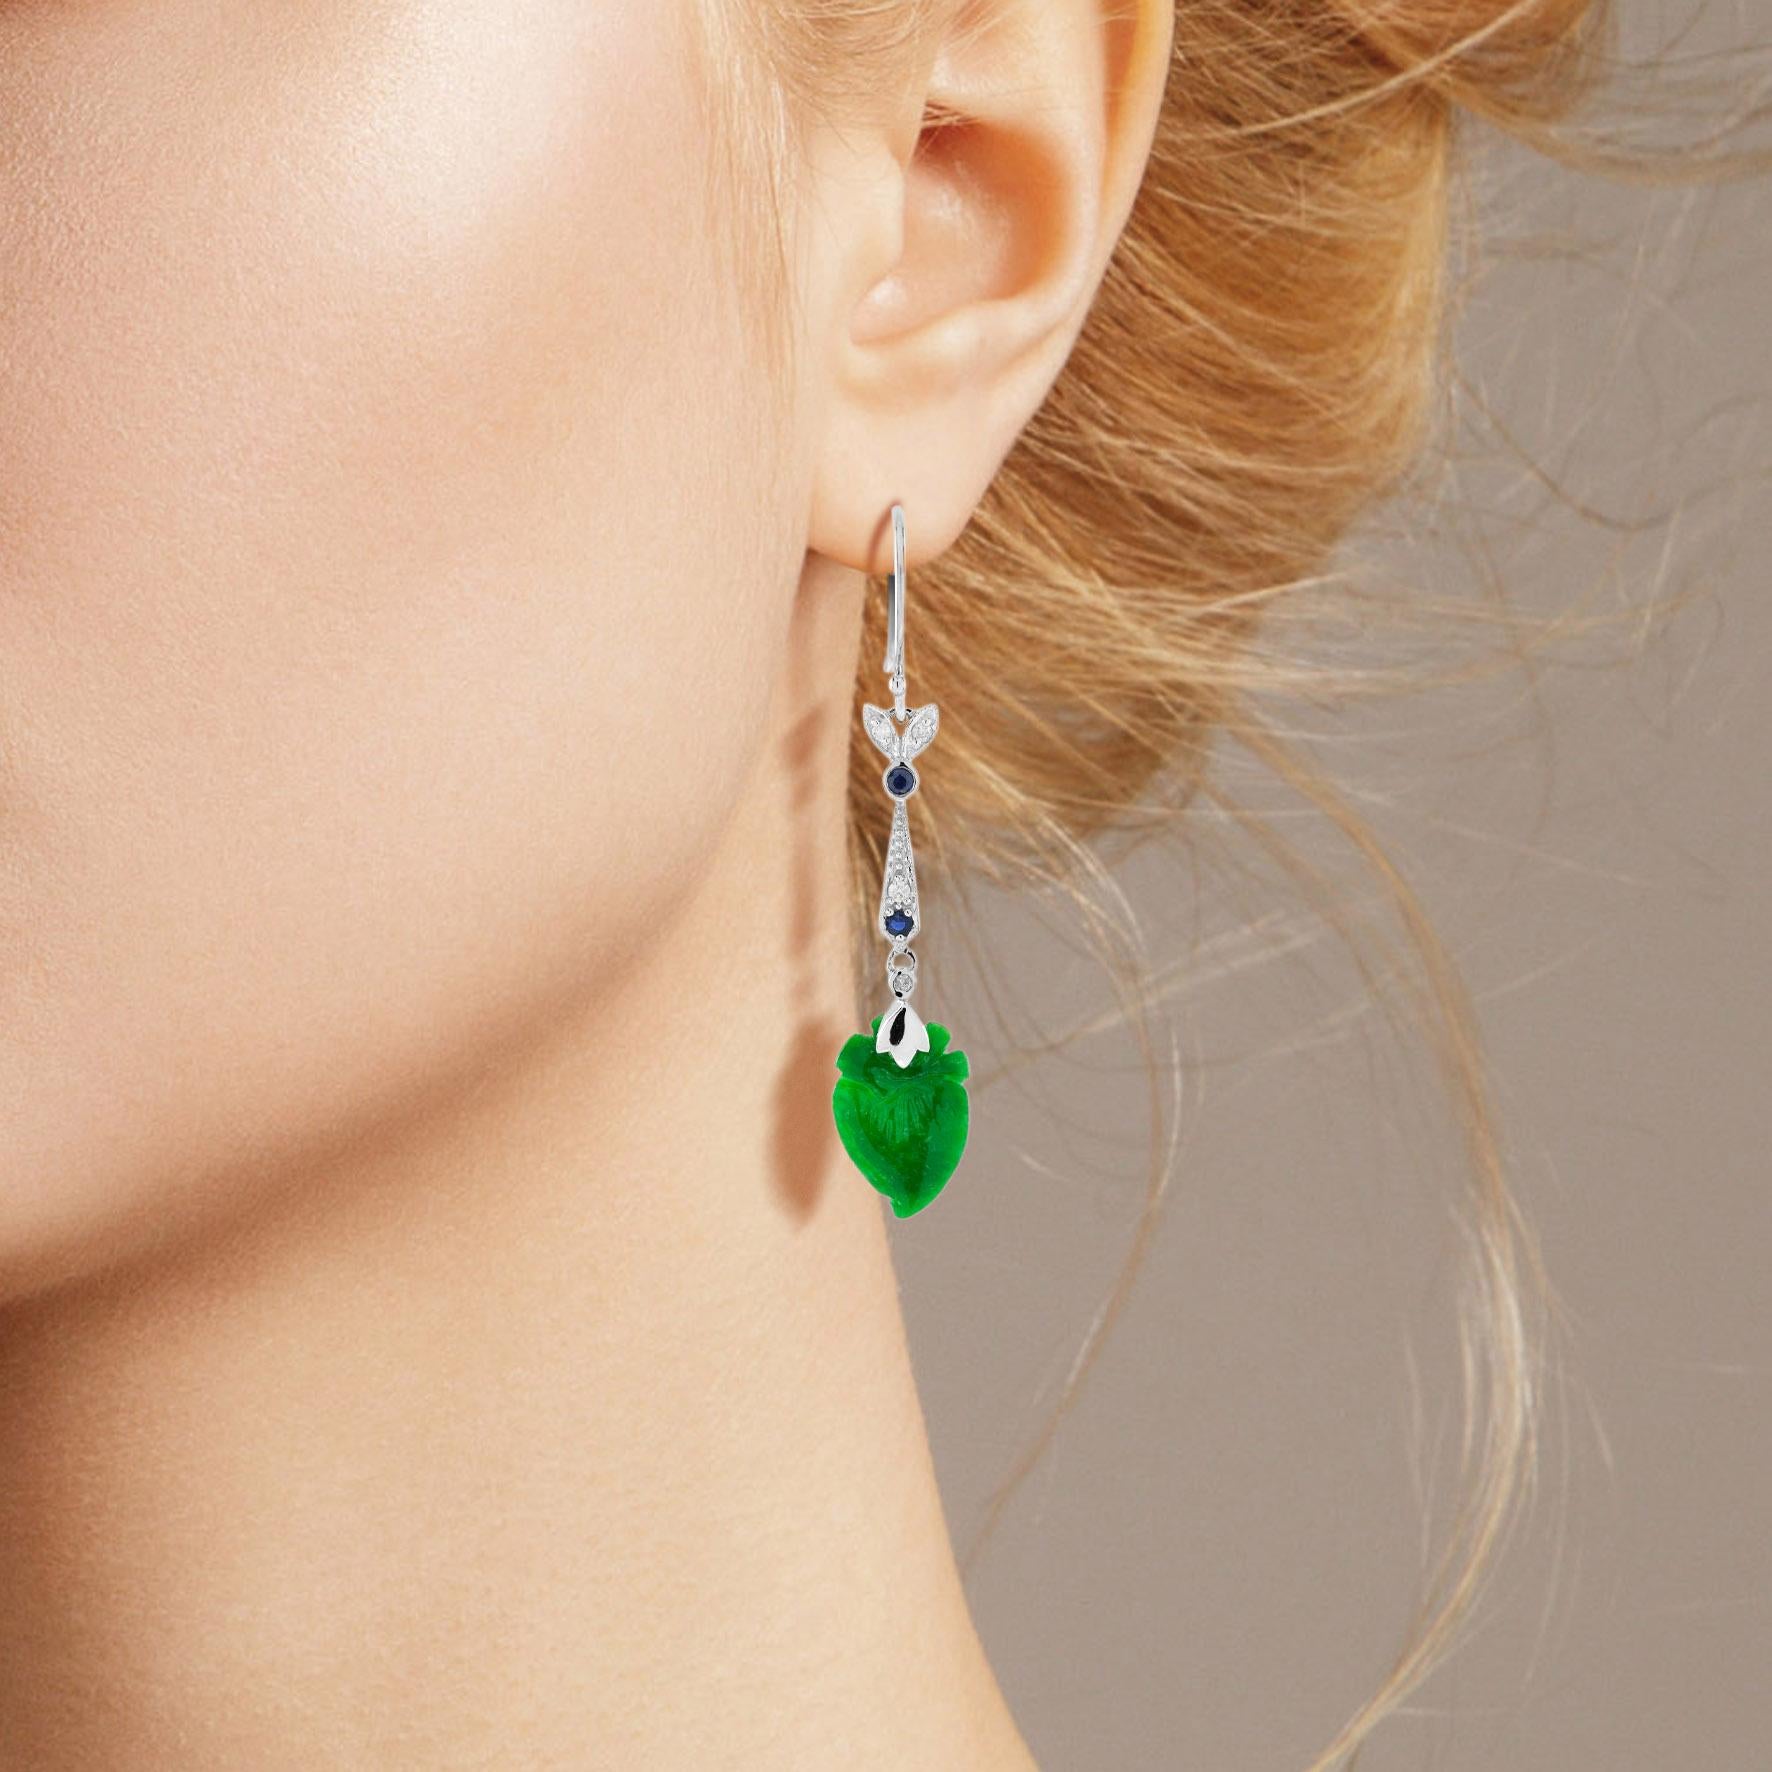 Le jade naturel de ces jolies boucles d'oreilles a une forme très particulière. Les deux pièces ont une couleur verte intense et des sculptures de fruits bien pêchés. Le jade est suspendu dans une monture en or blanc 9k avec une feuille de diamant